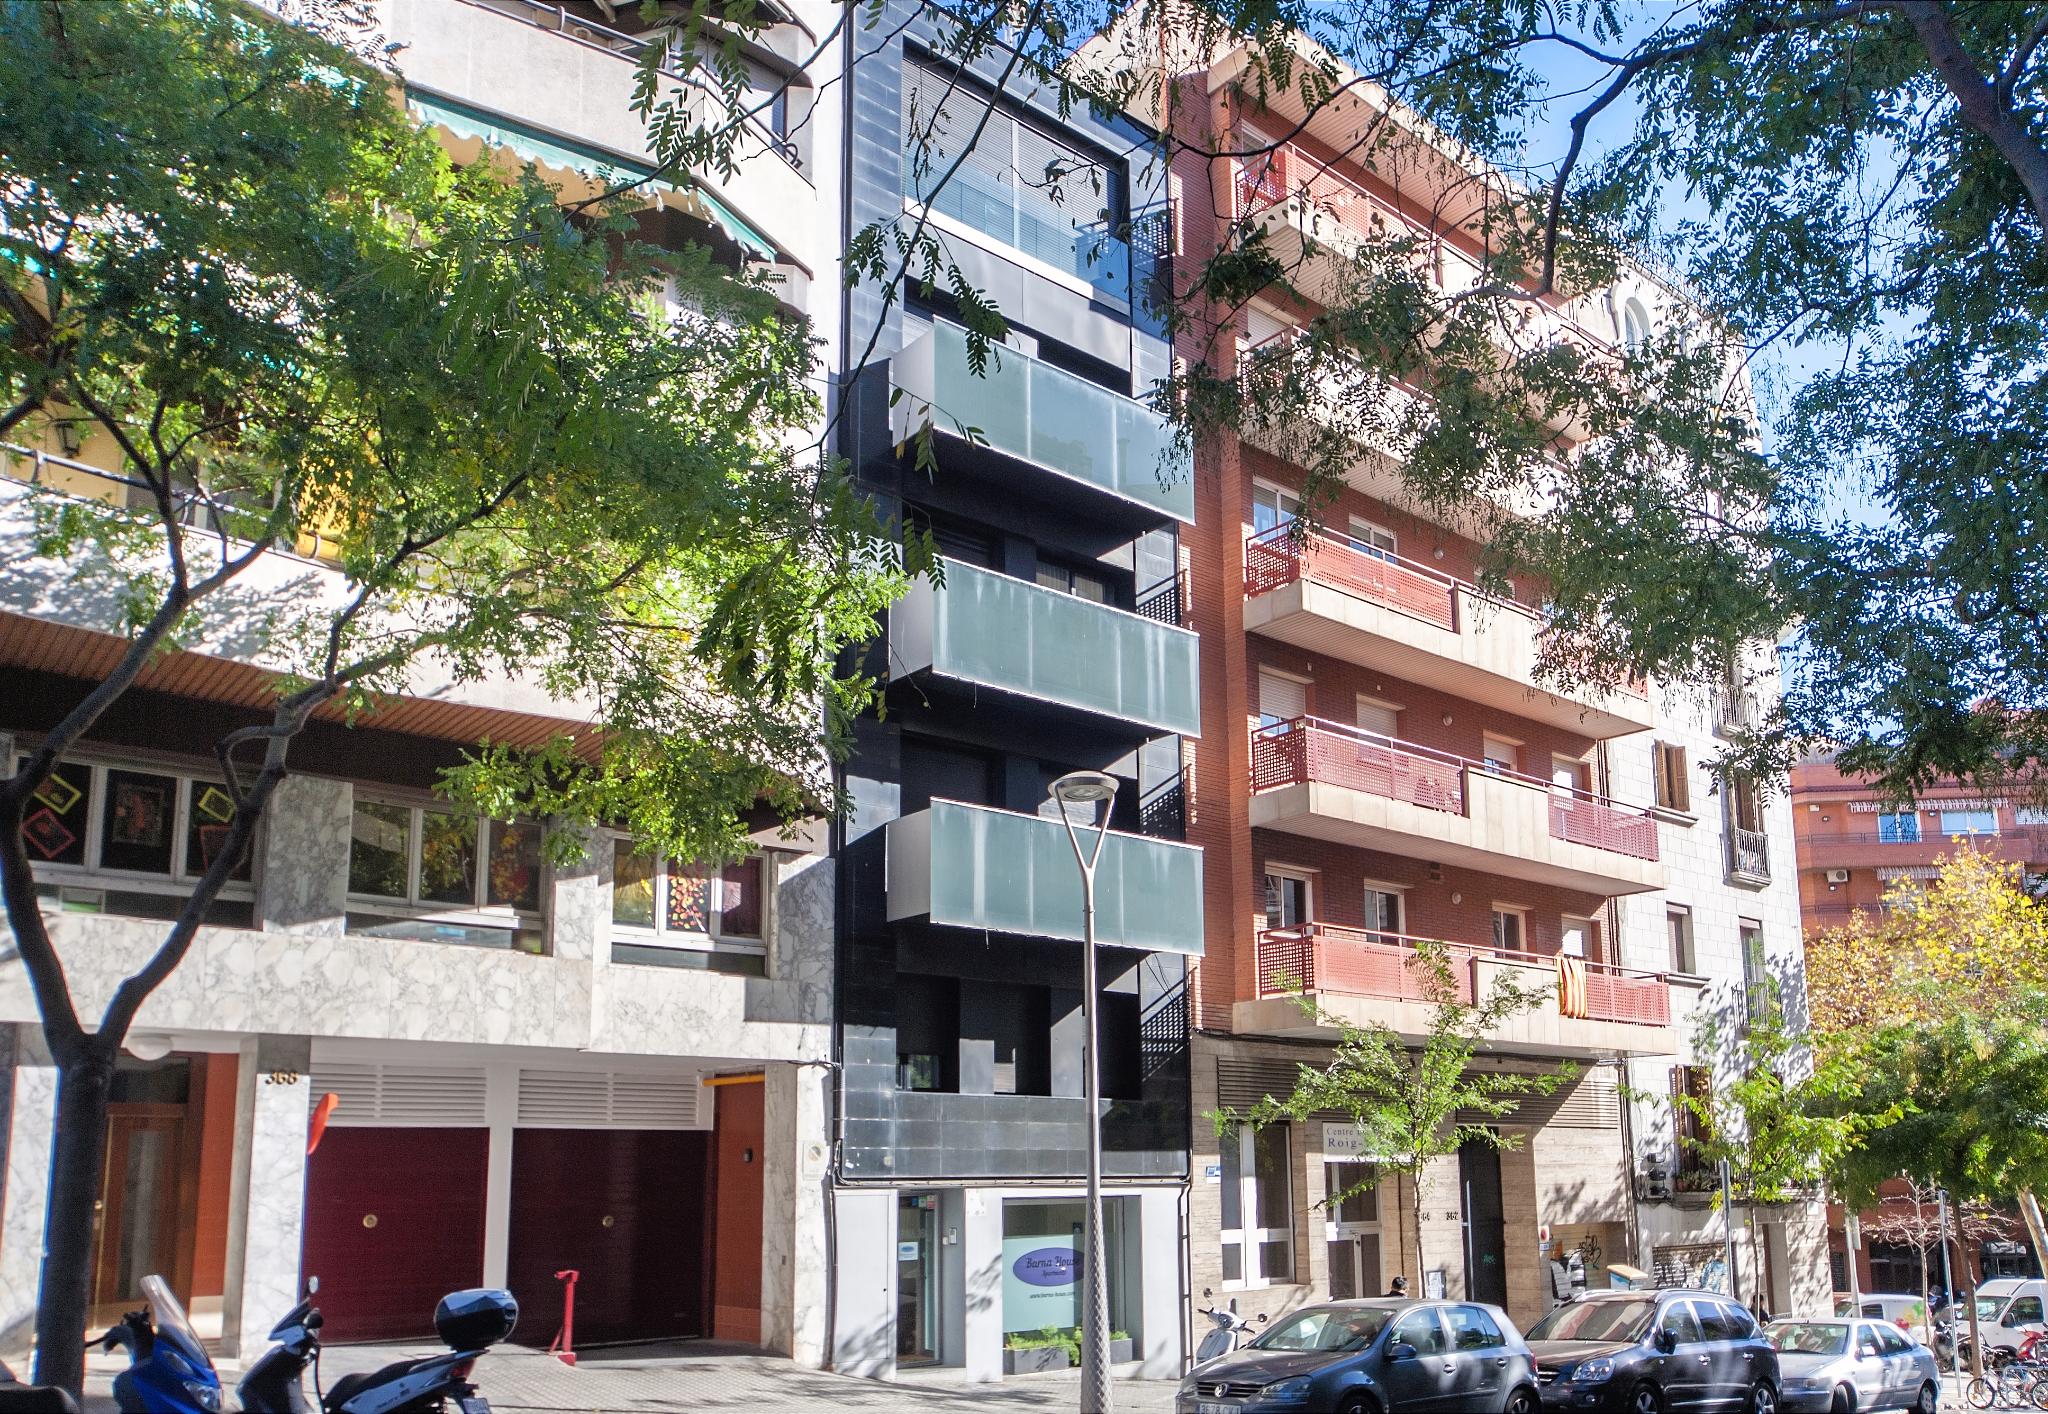 Unique Apartments Hotel Sant Pau Barcelona with Best Design